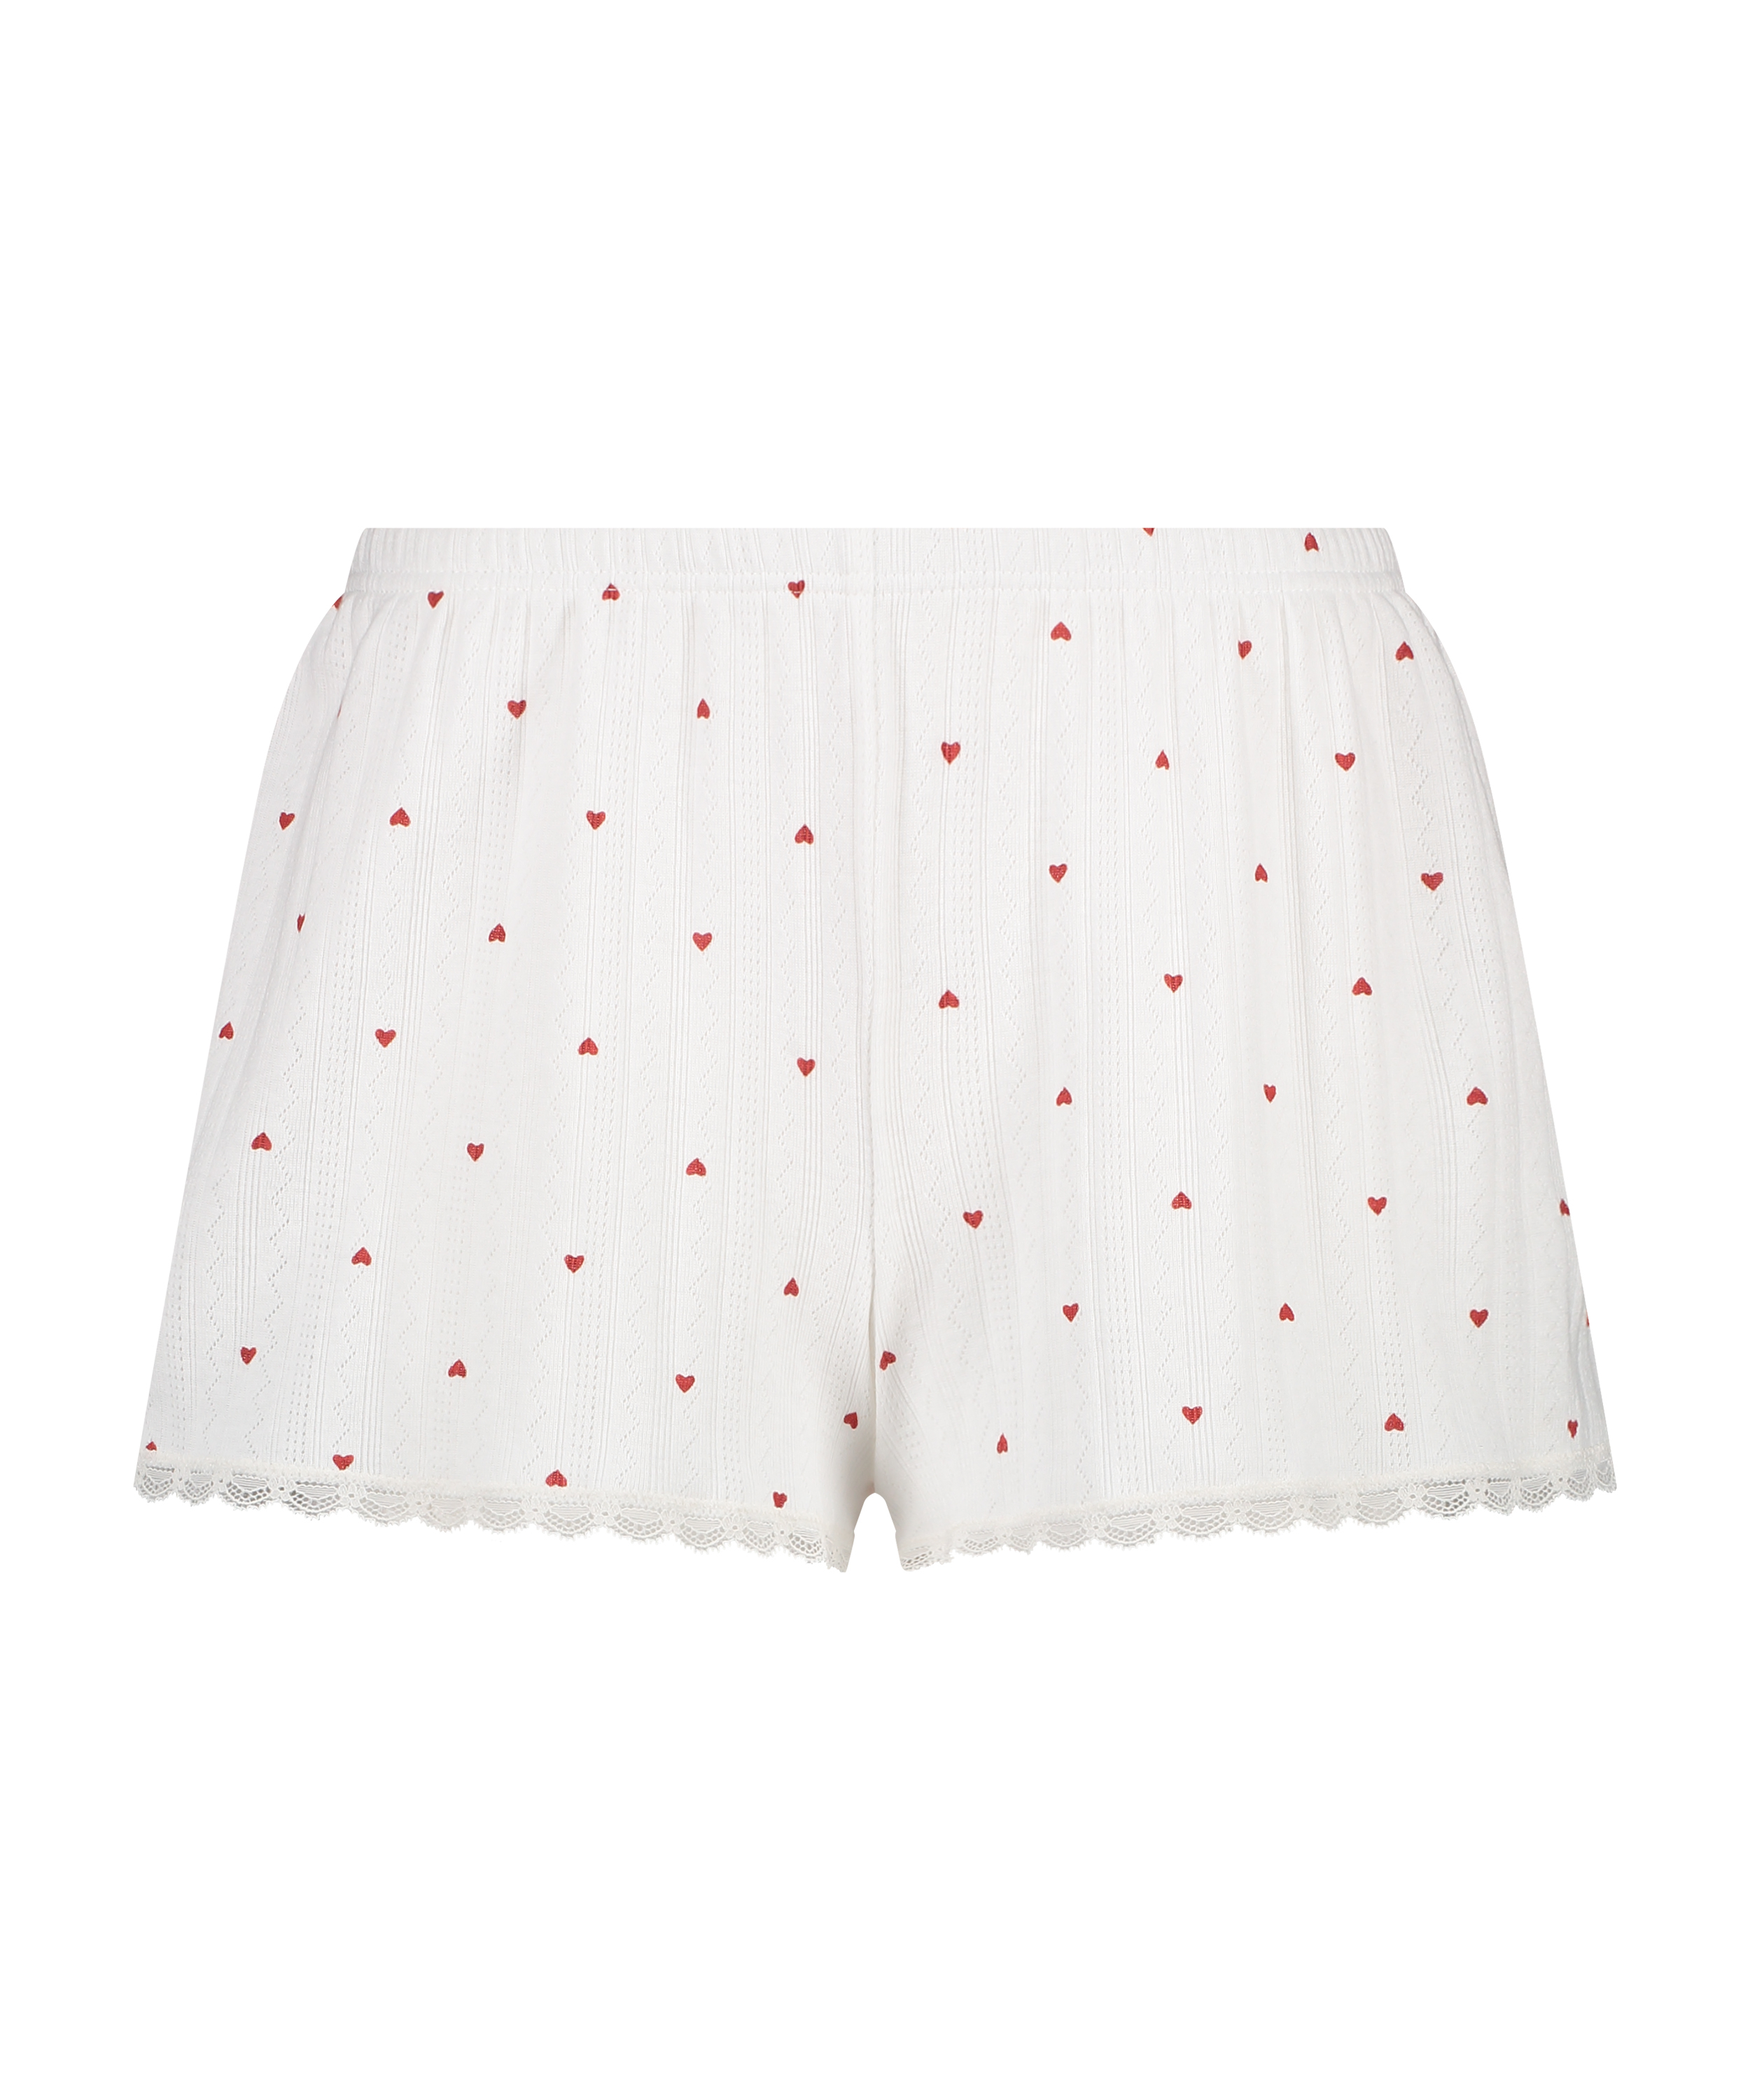 Pantalones cortos de pijama Pointelle, Blanco, main